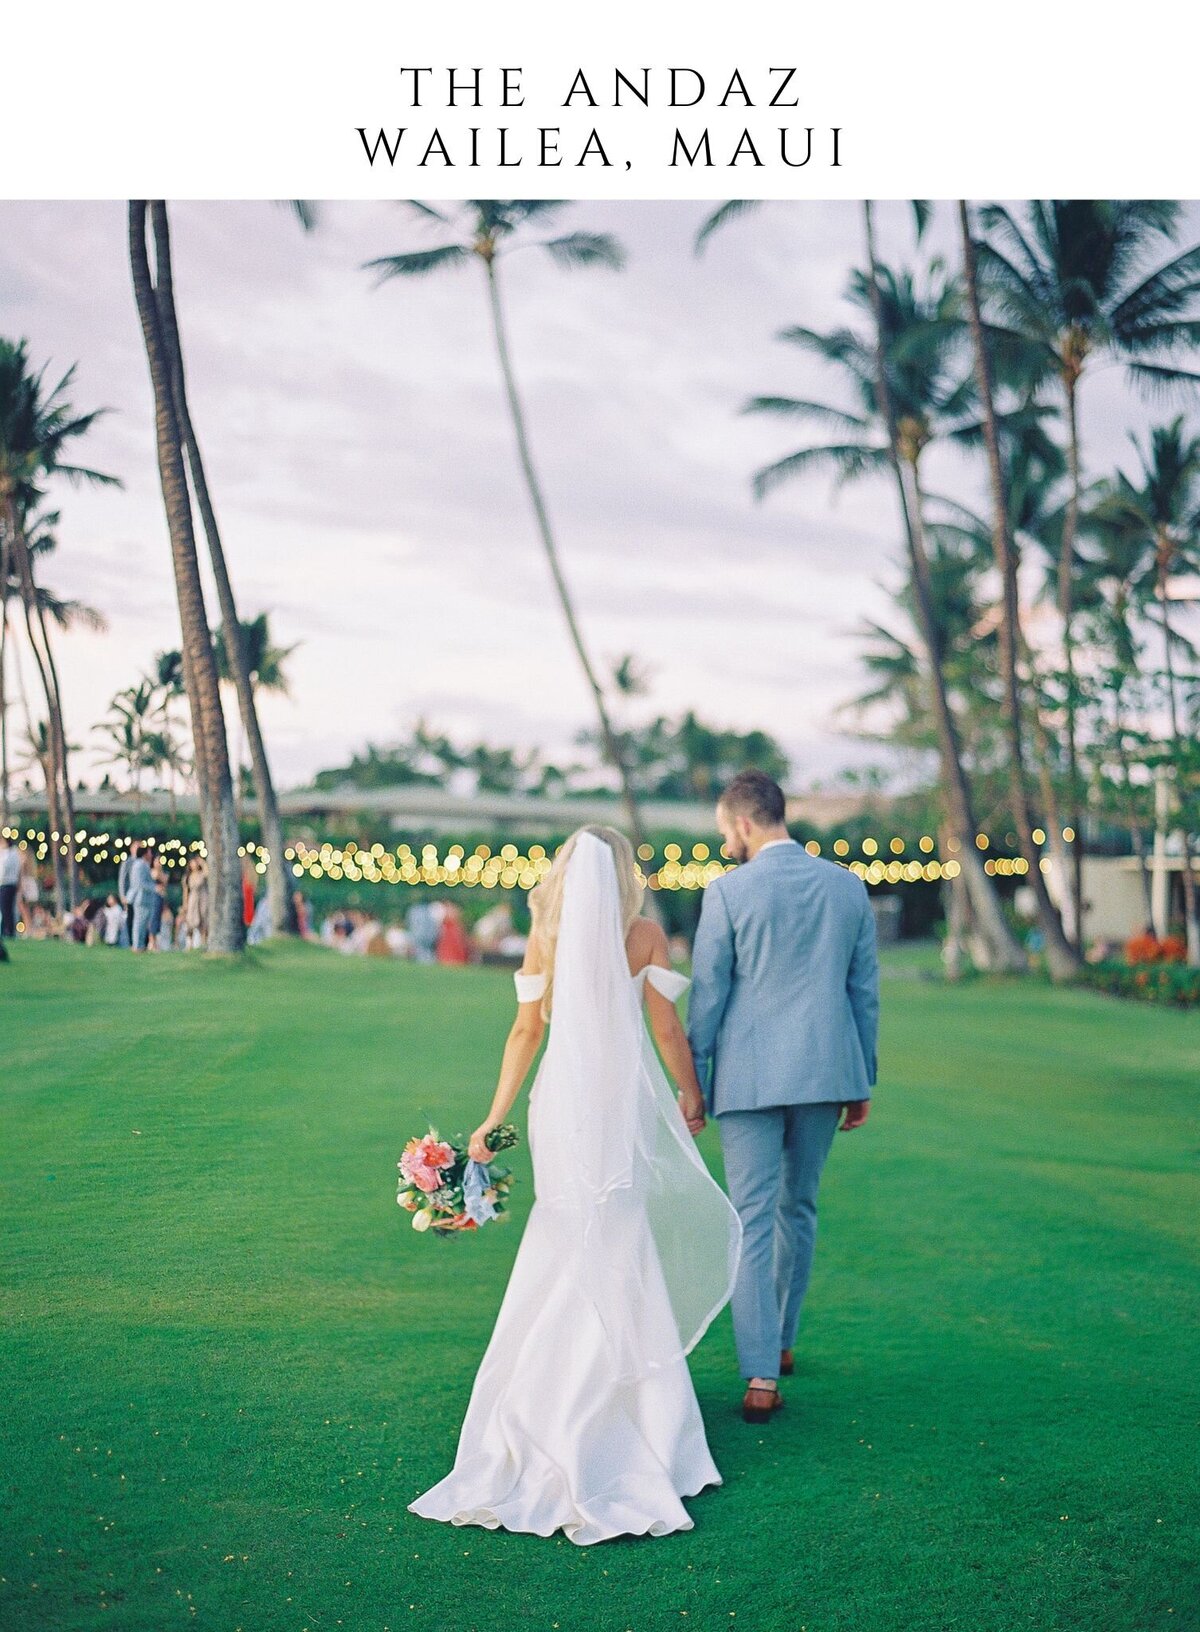 Wailea Maui Wedding Venue